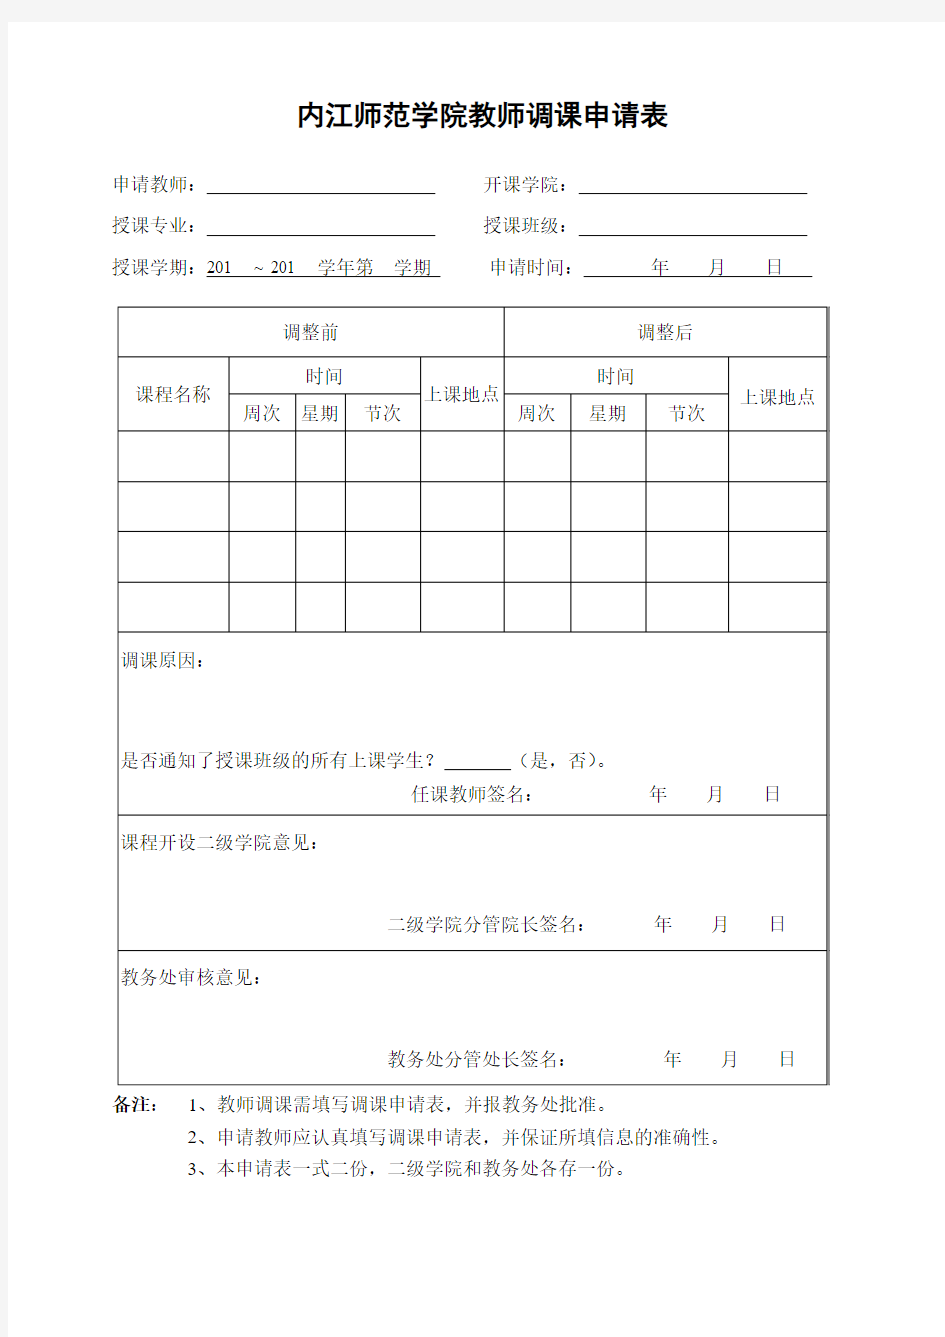 内江师范学院 教师调课申请表 (3)